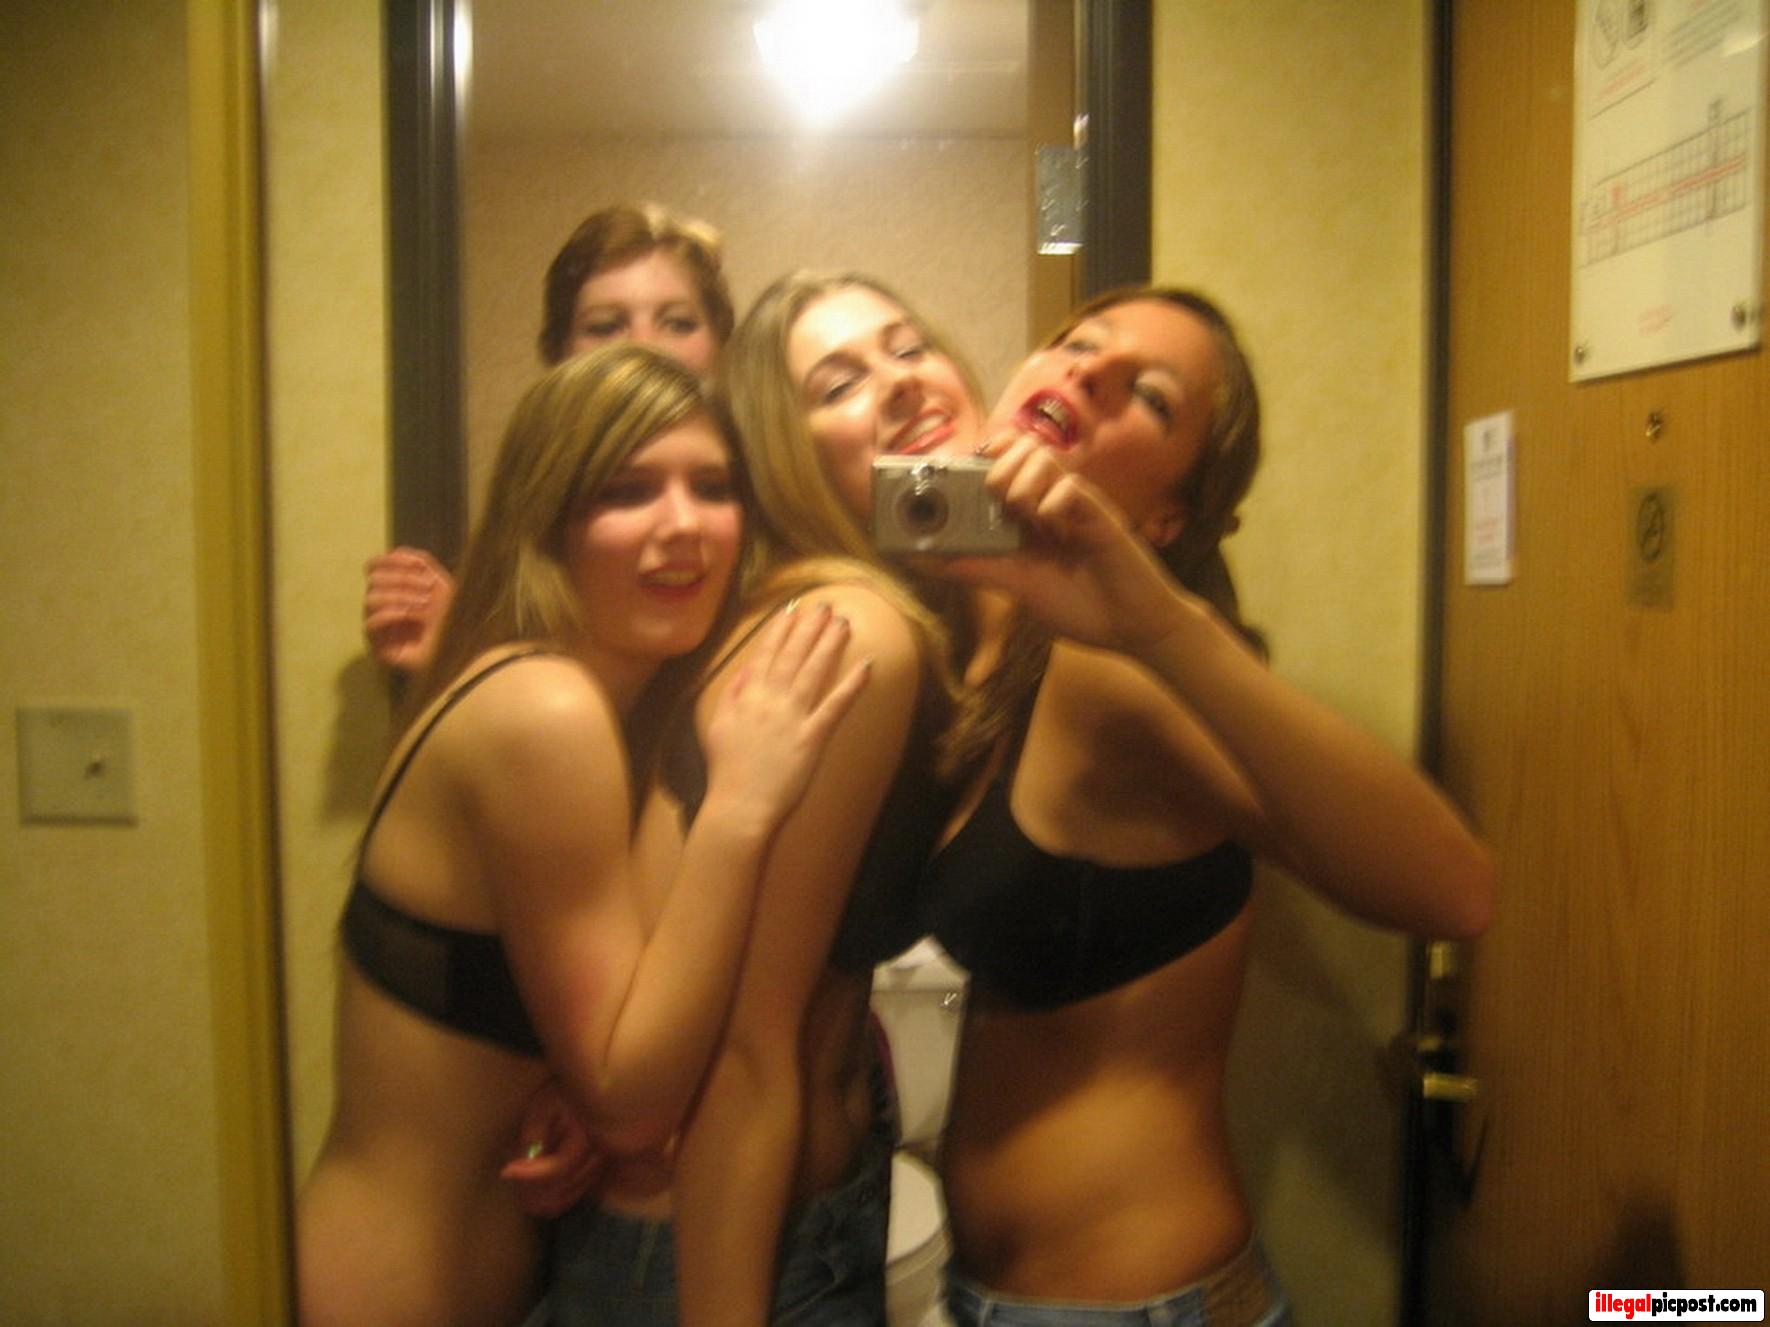 Vier knotsgekke meiden maken een selfie